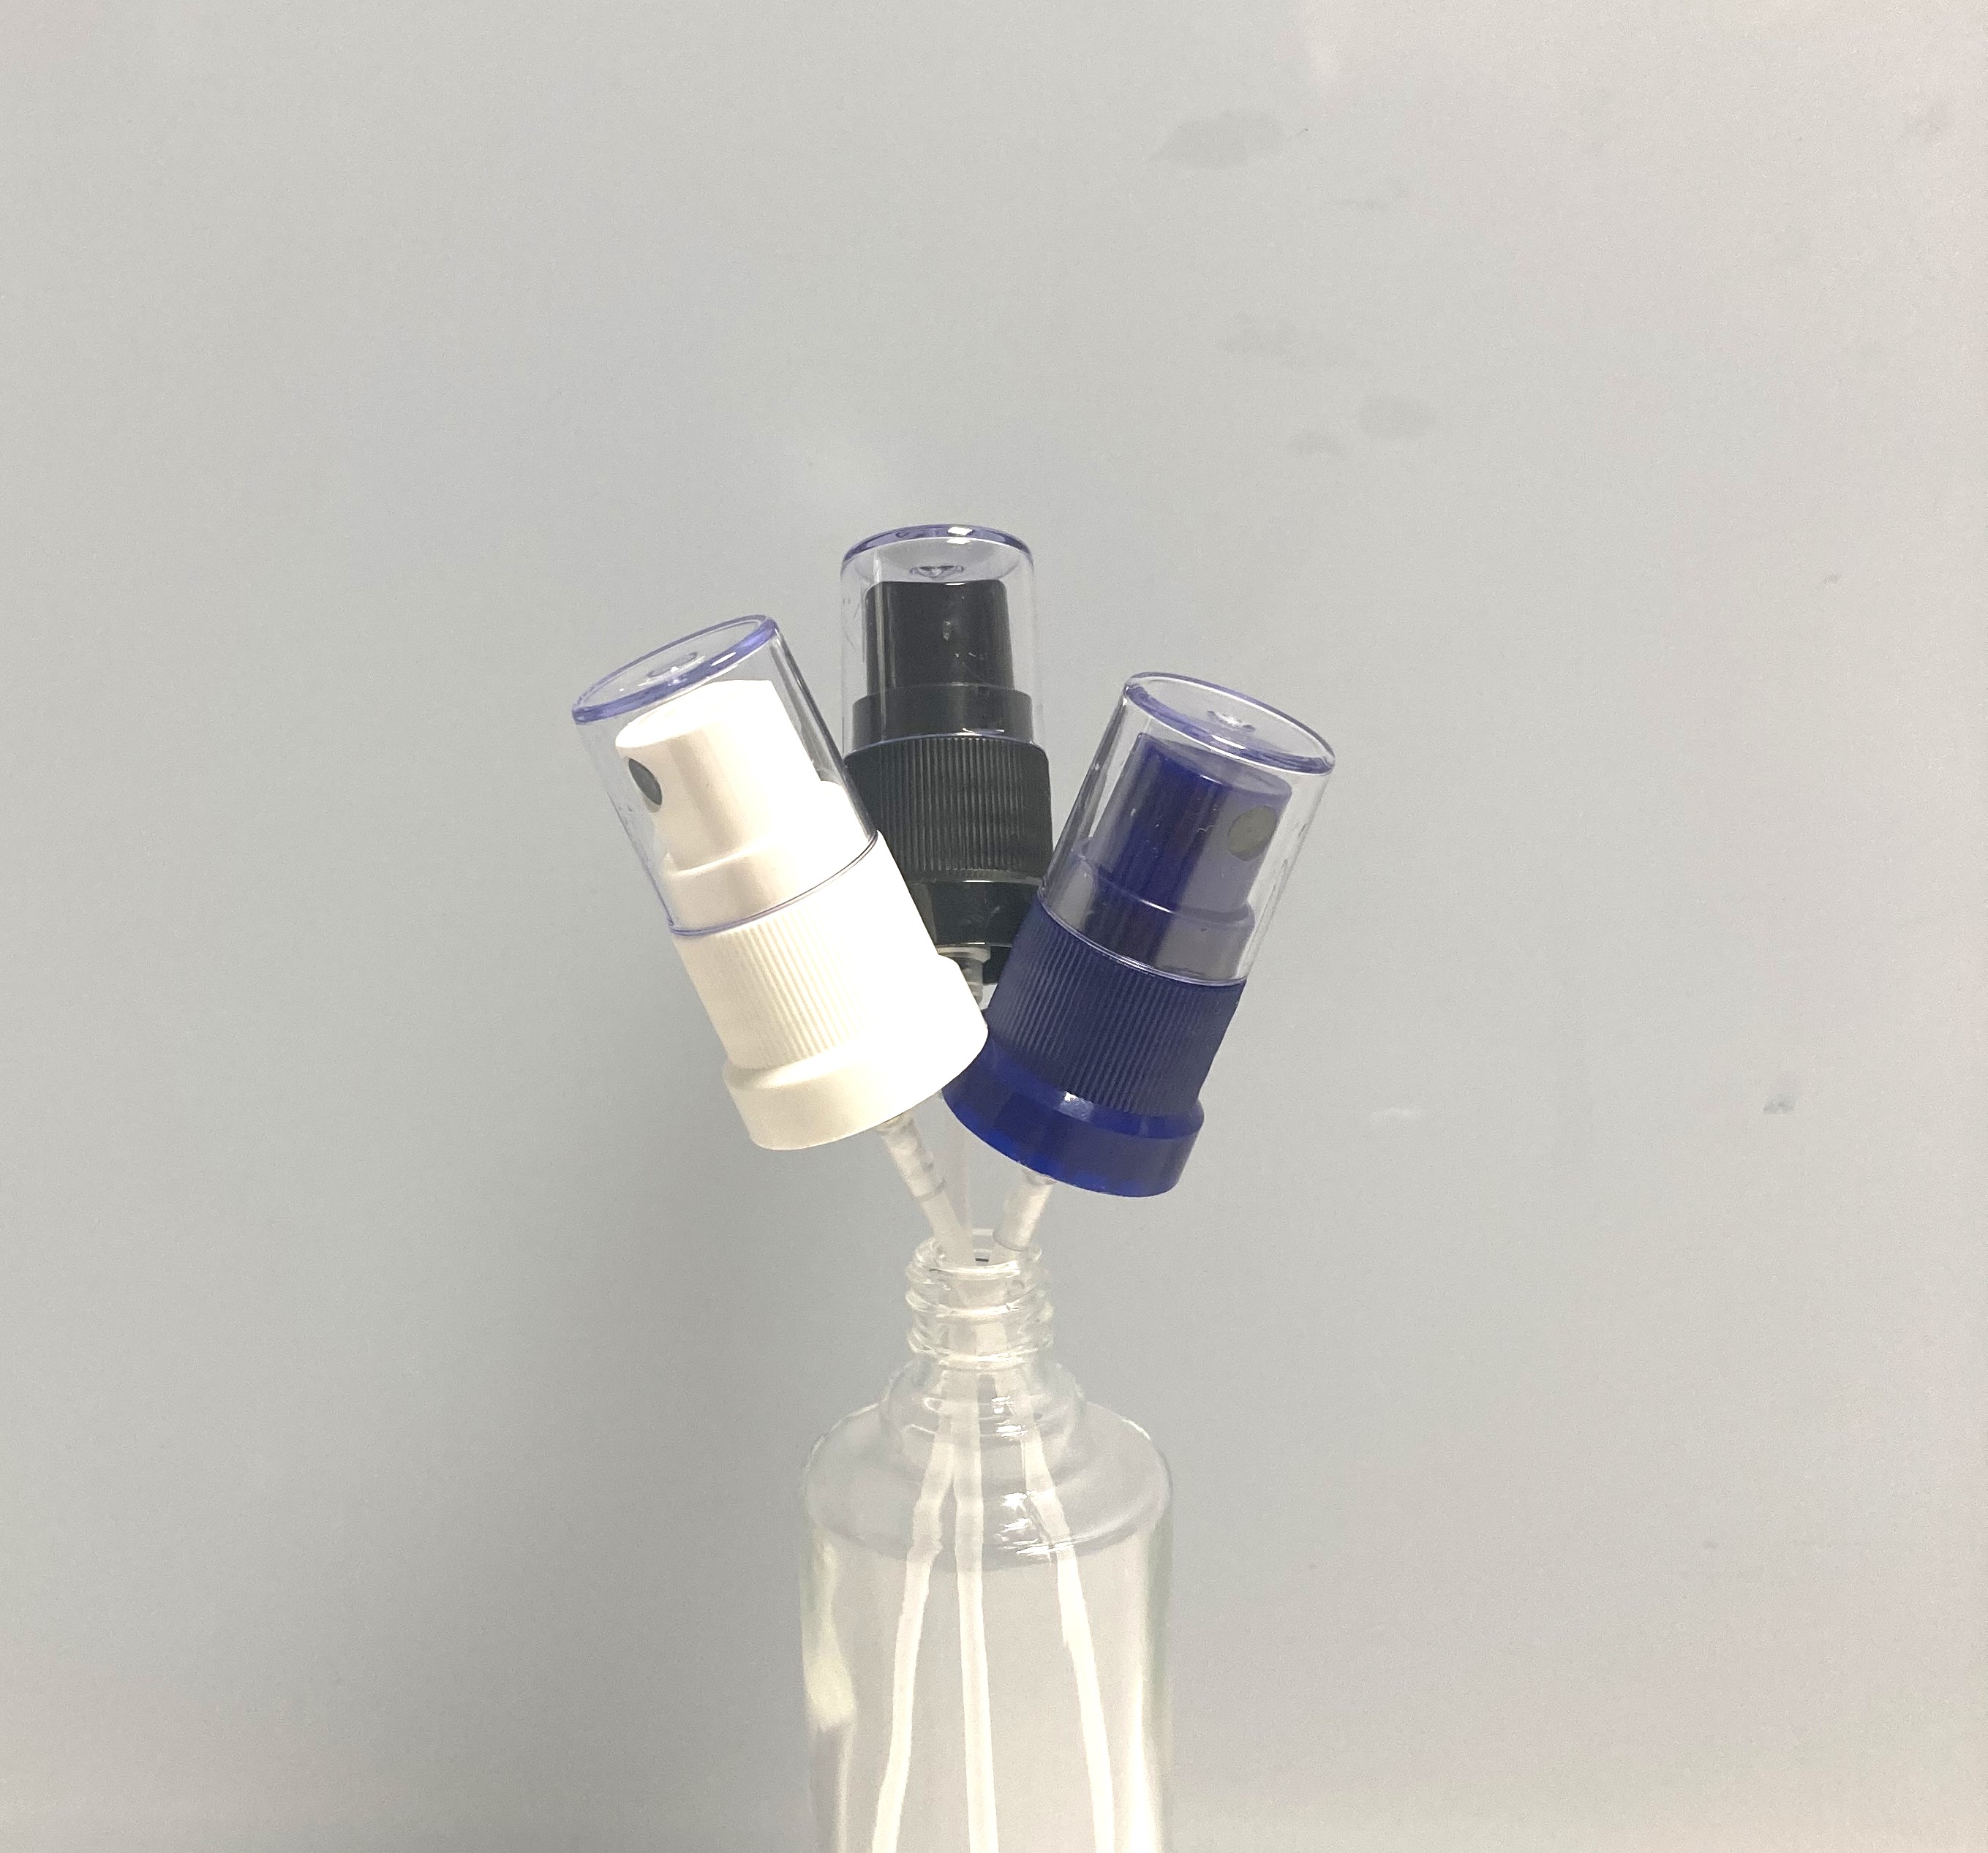 Zerstäuber weiss, schwarz, blau passend zu Glasflaschen DIN18 bis 100ml